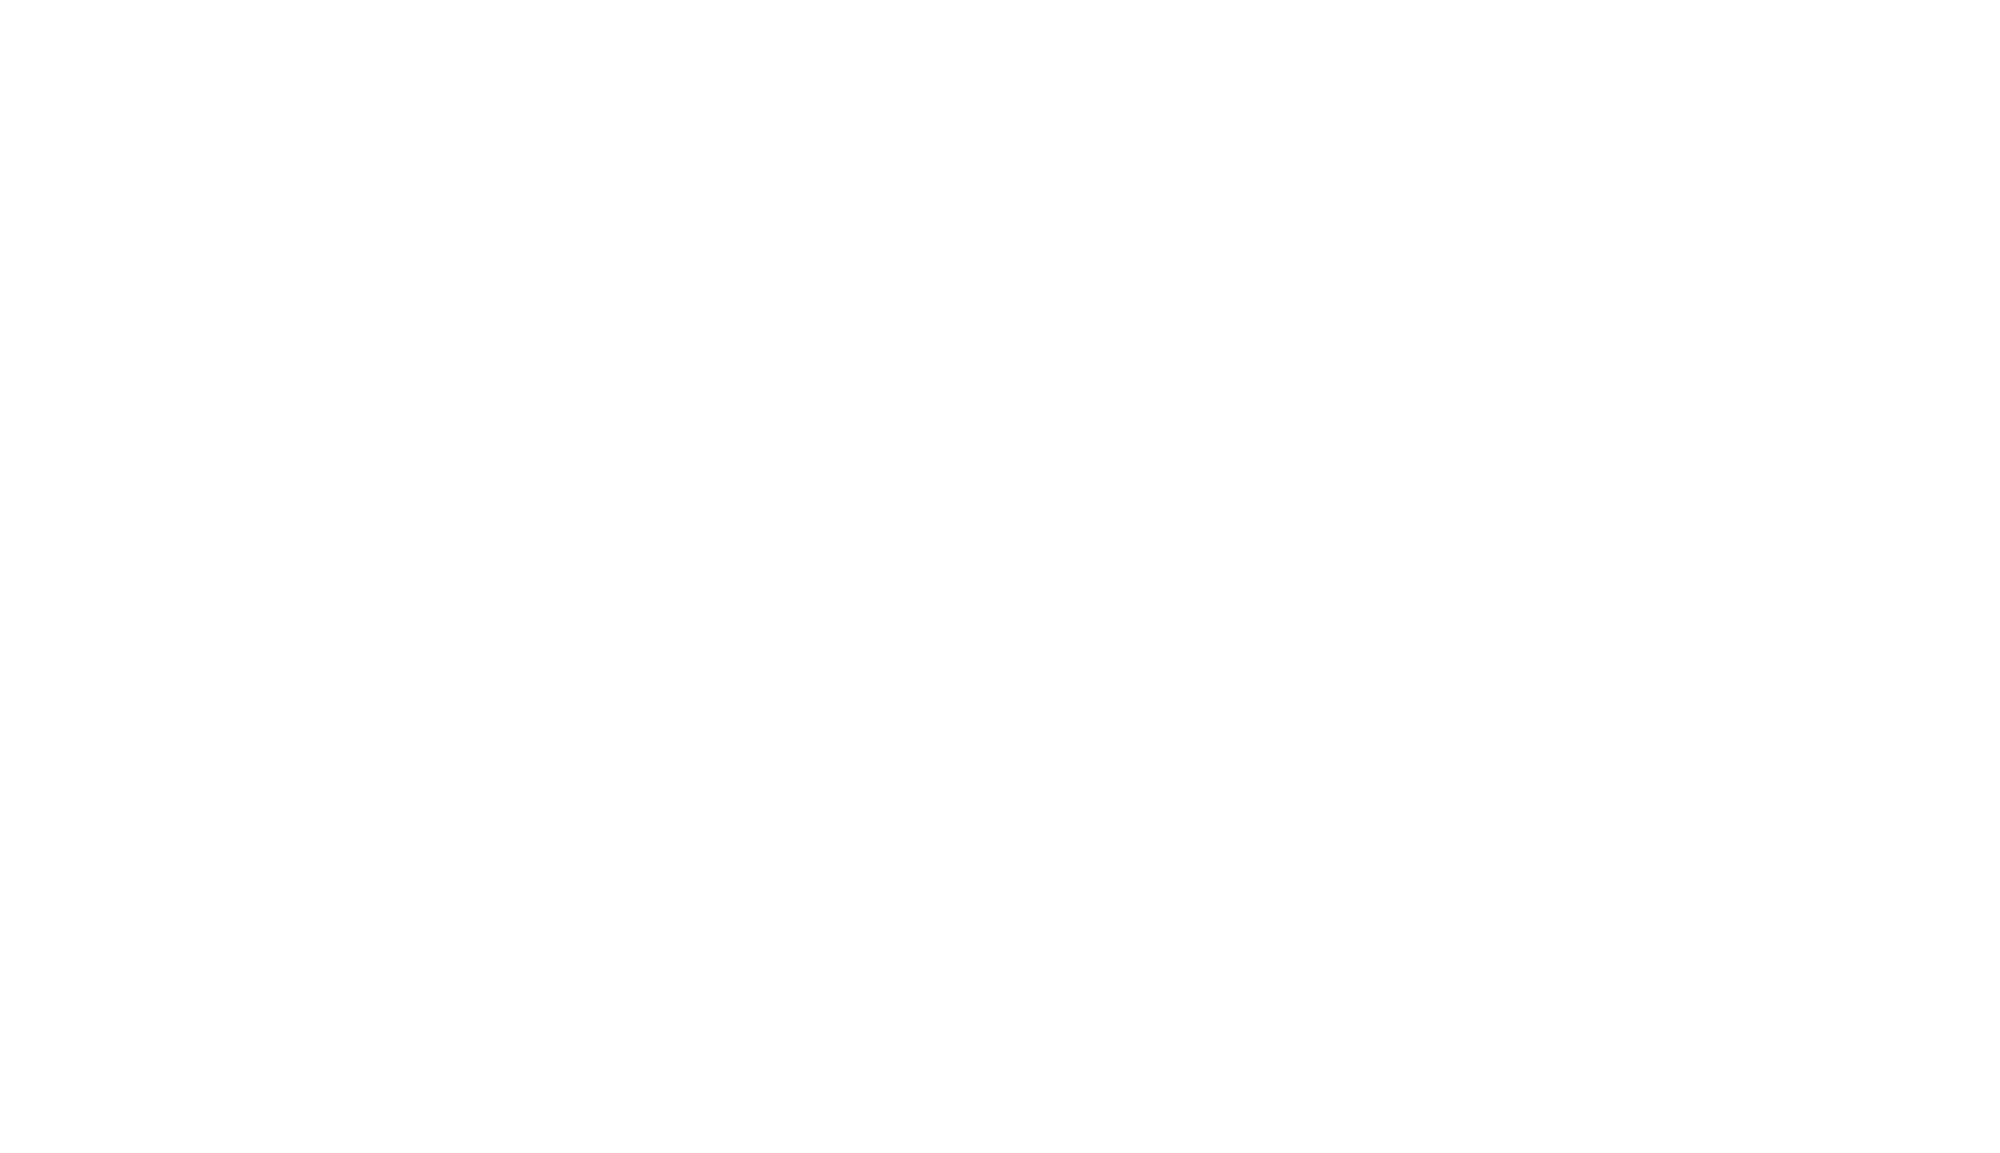 100th Anniversary NAIGAI Co.,Ltd.